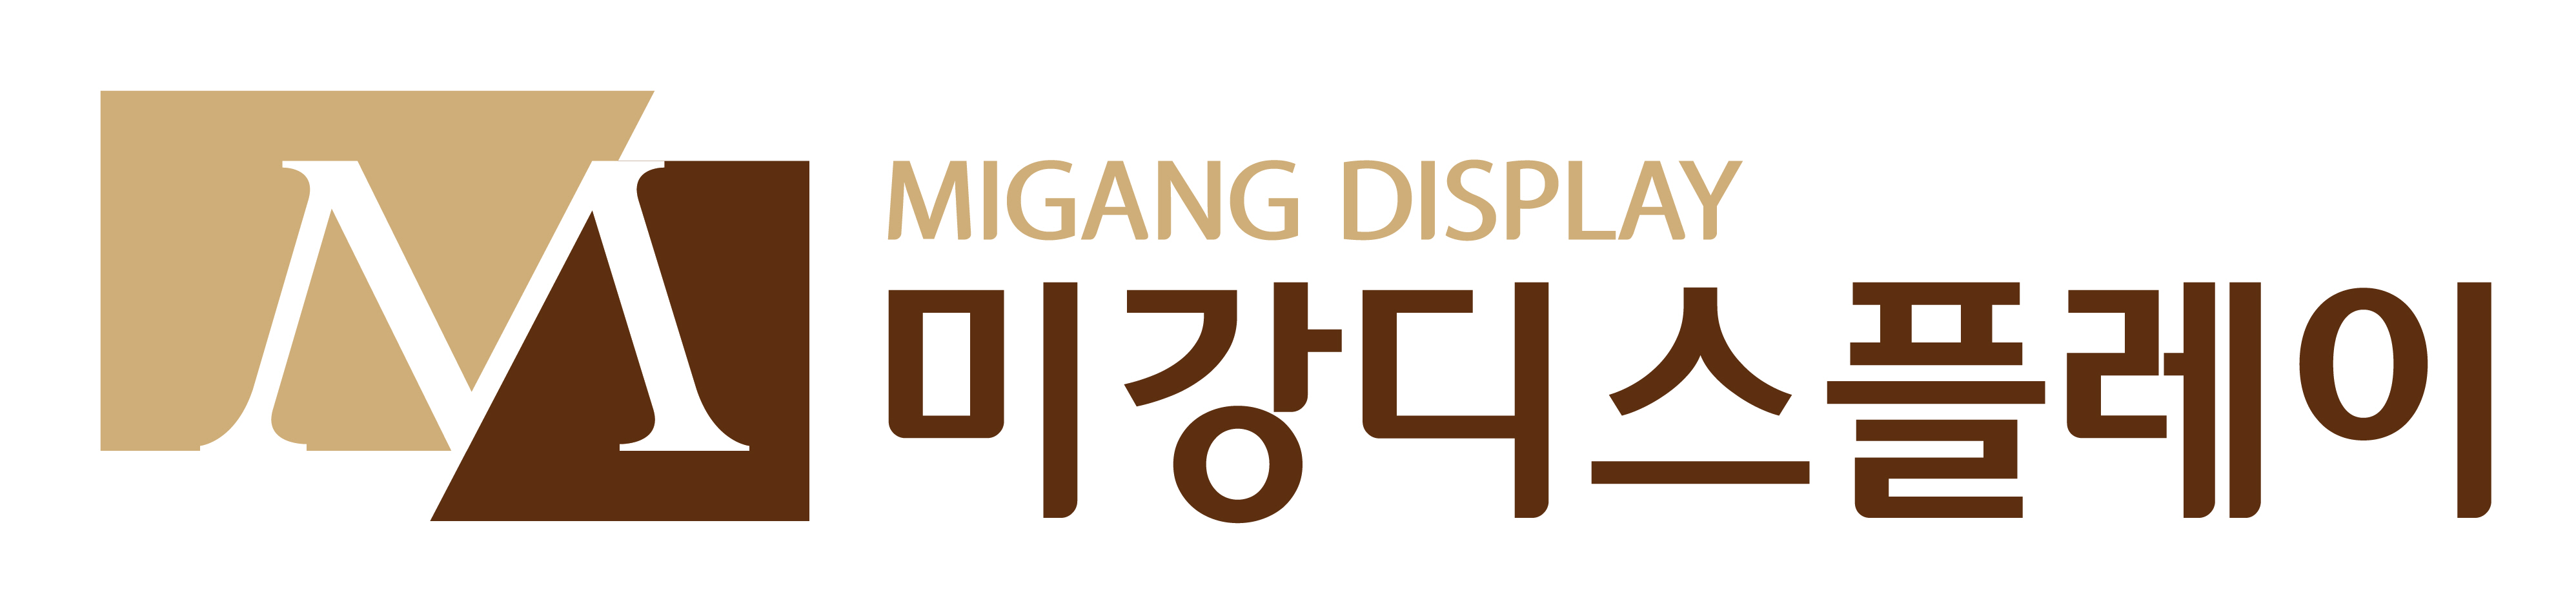 Migang Display Co., Ltd. LOGO